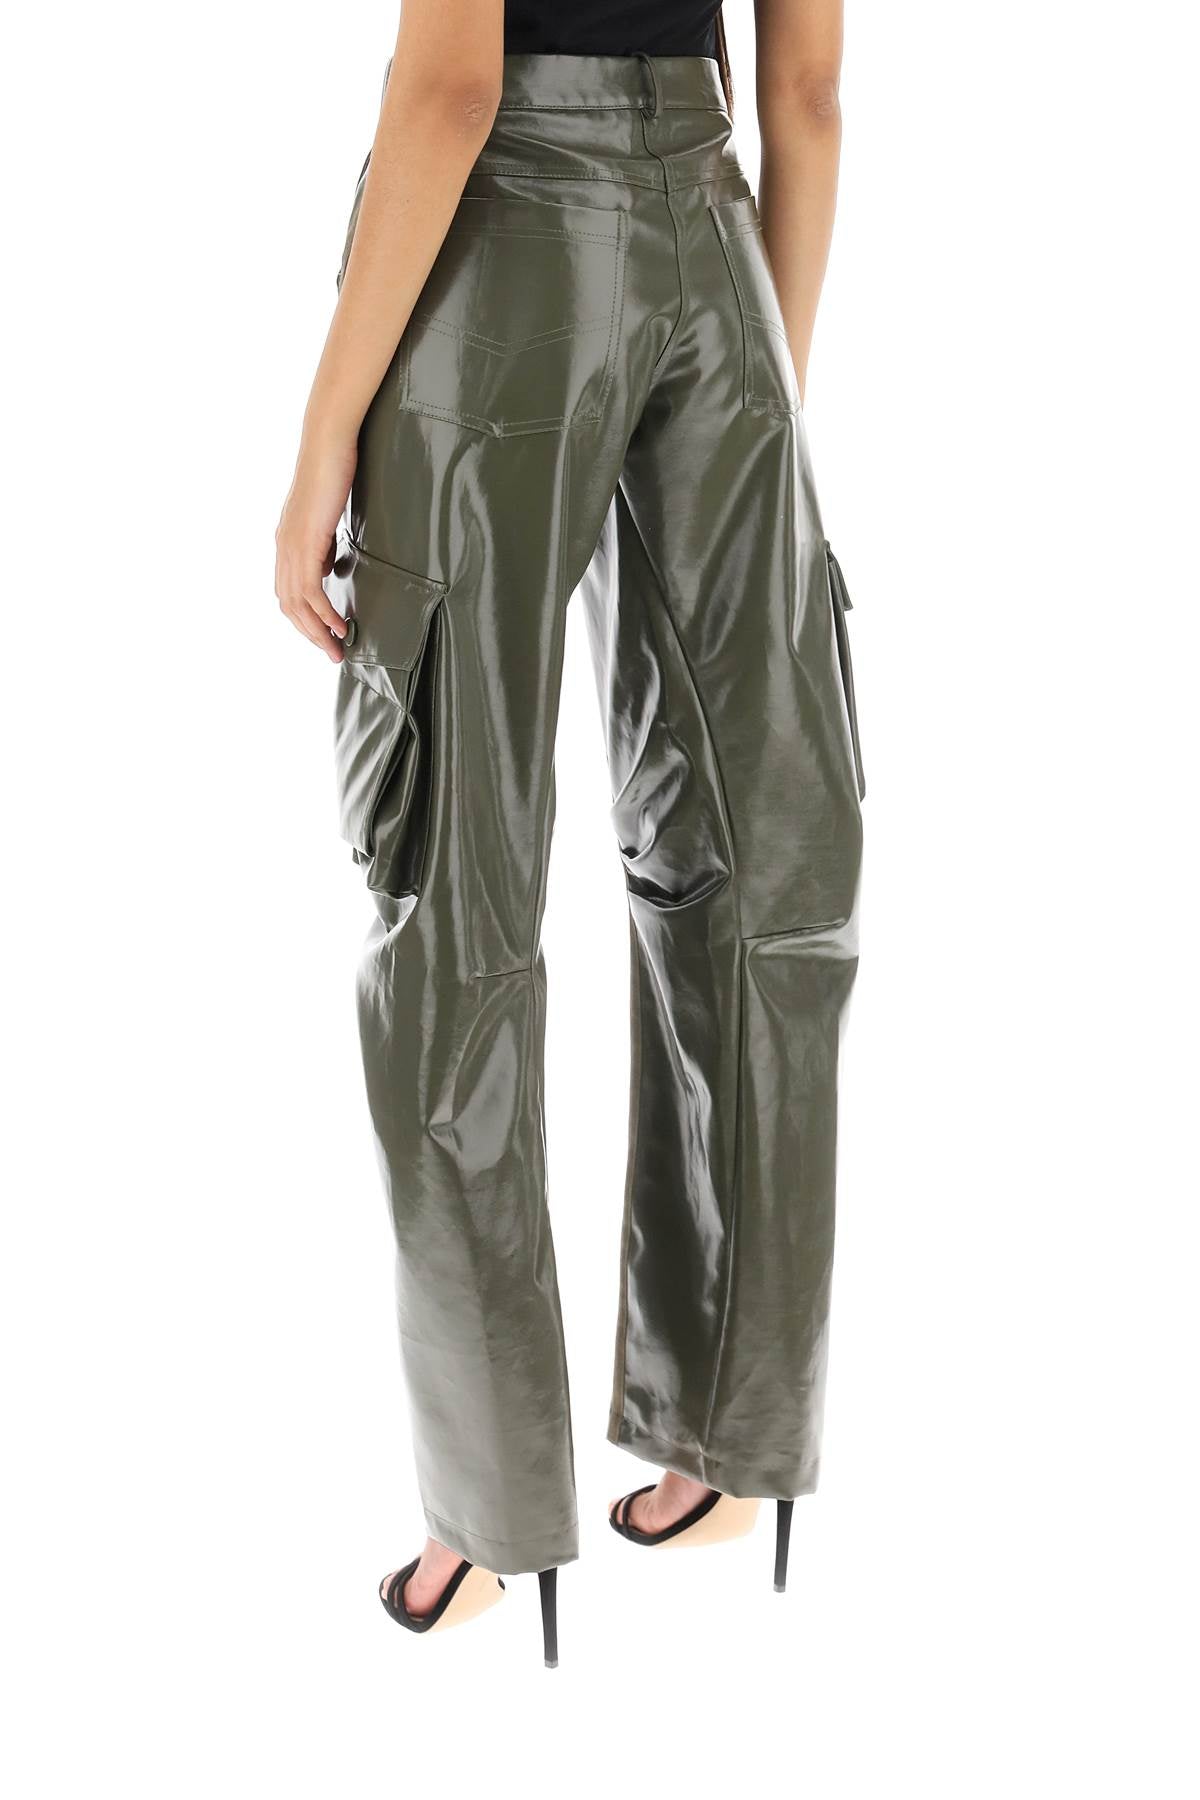 Mvp wardrobe montenapoleone cargo pants-2